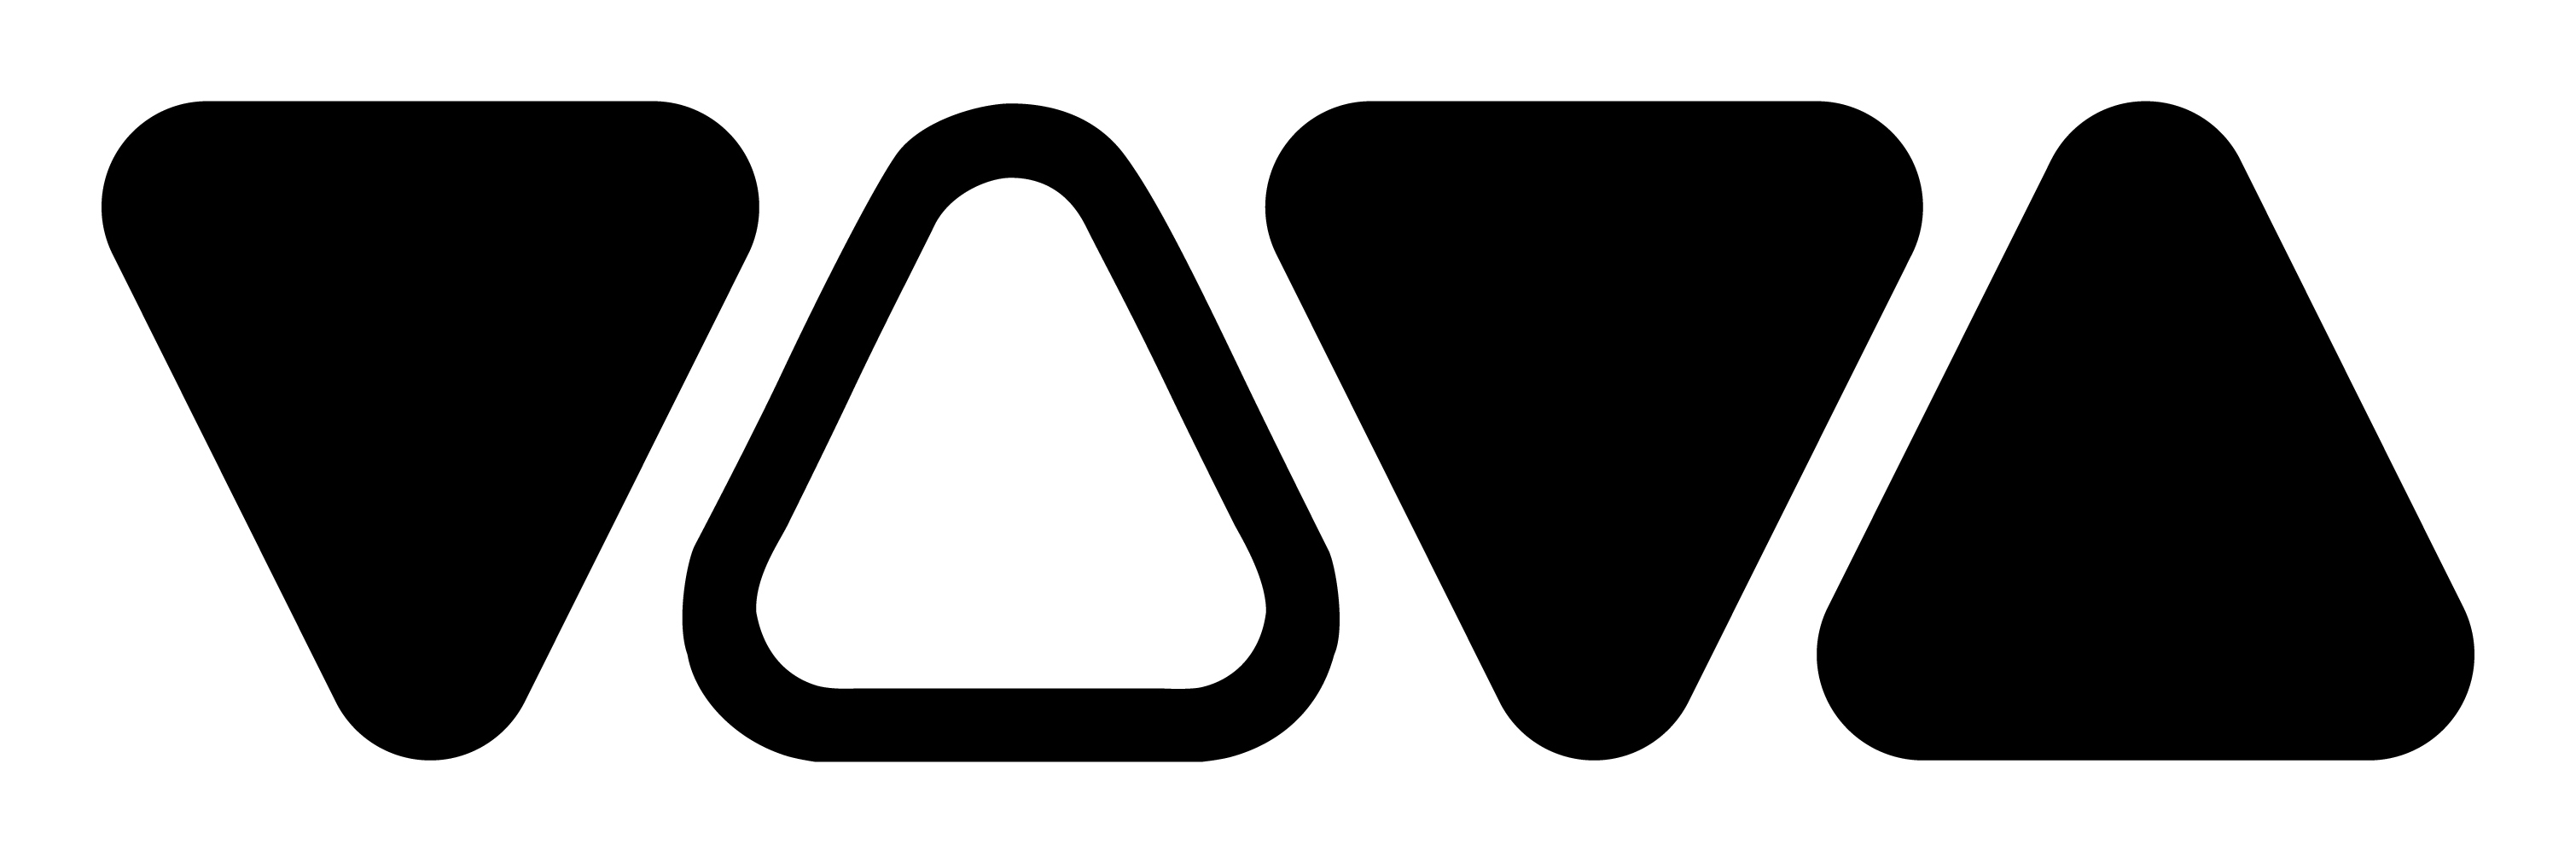 Vievu Logo photo - 1